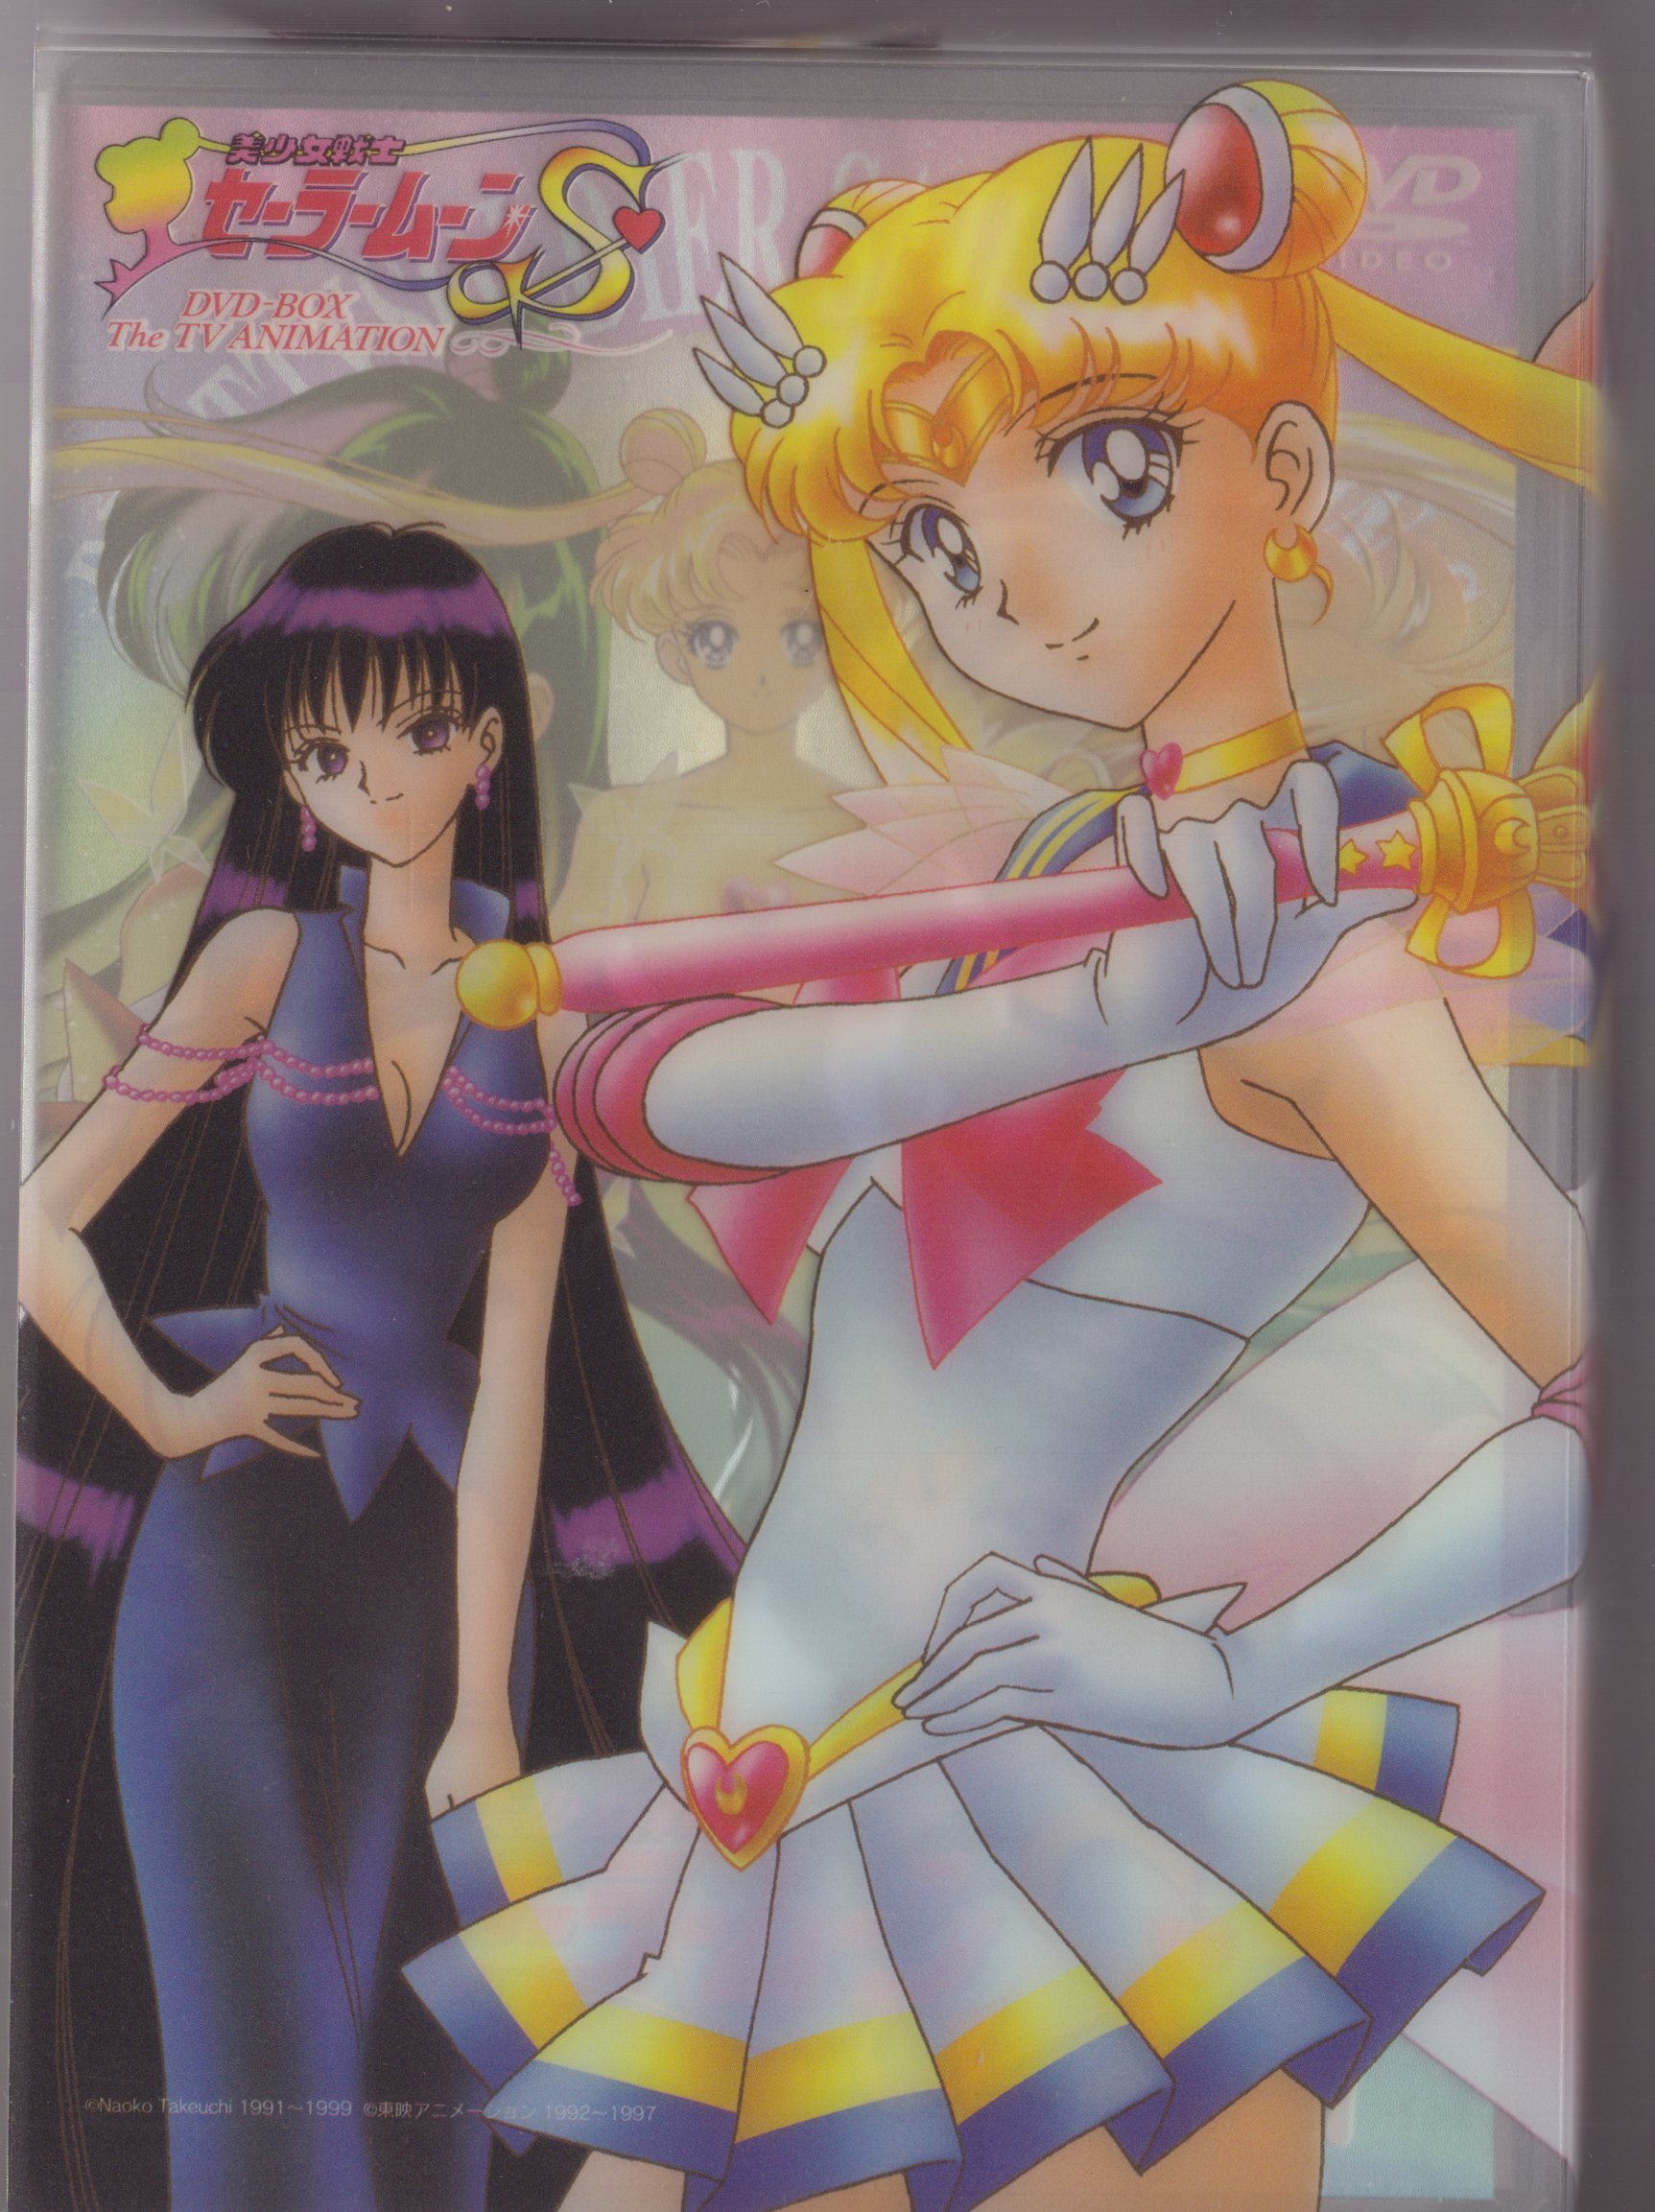 美少女戦士セーラームーンS DVD 全巻 全7巻 アニメ - DVD/ブルーレイ